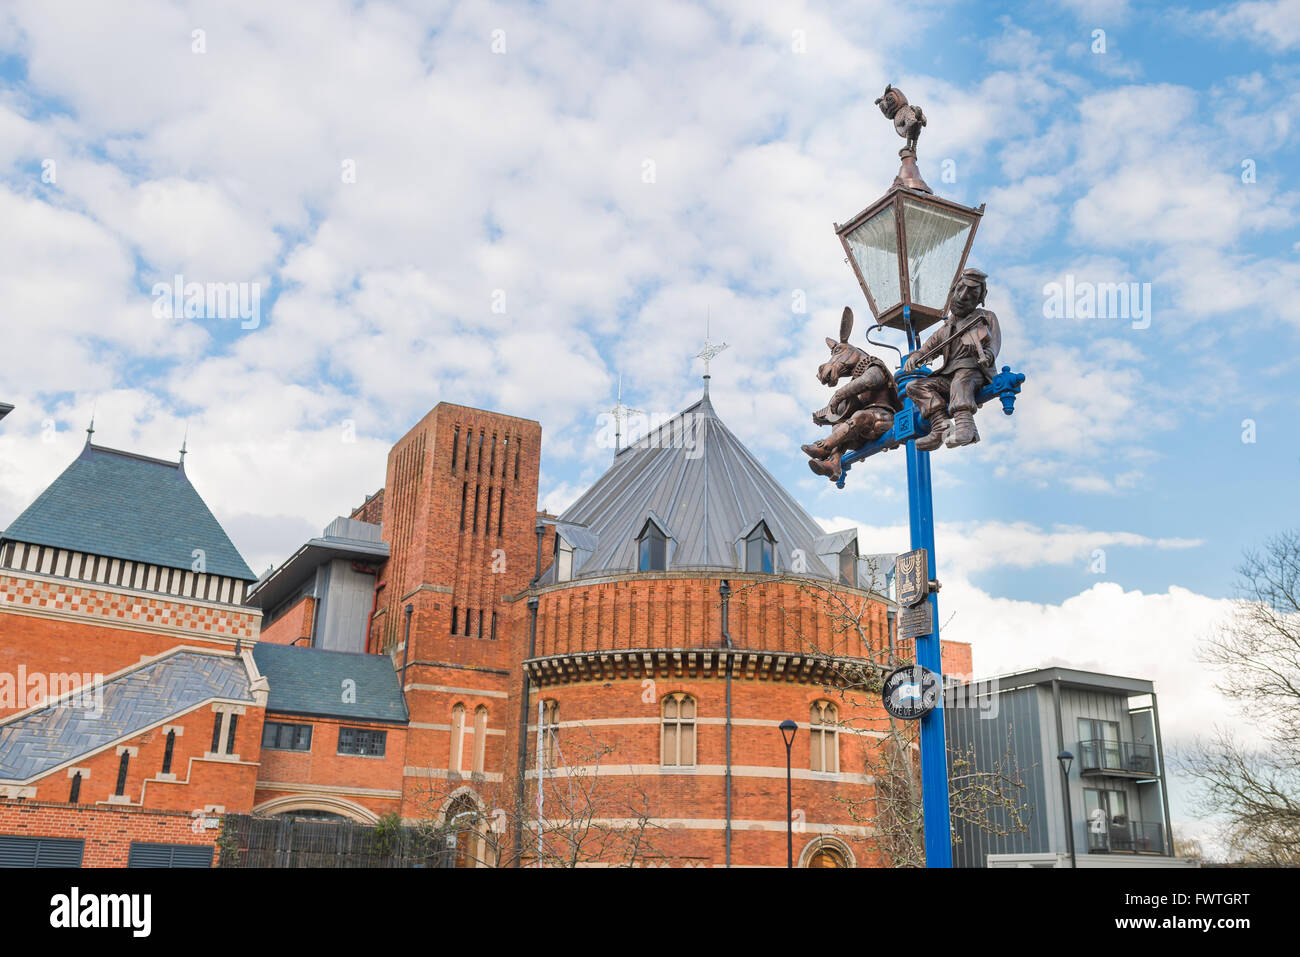 Poste de lampe Shakespeare, vue sur un poteau de lampe à côté du Swan Theatre décoré avec les figures De Fond et Tevye, Stratford Upon Avon, Royaume-Uni Banque D'Images